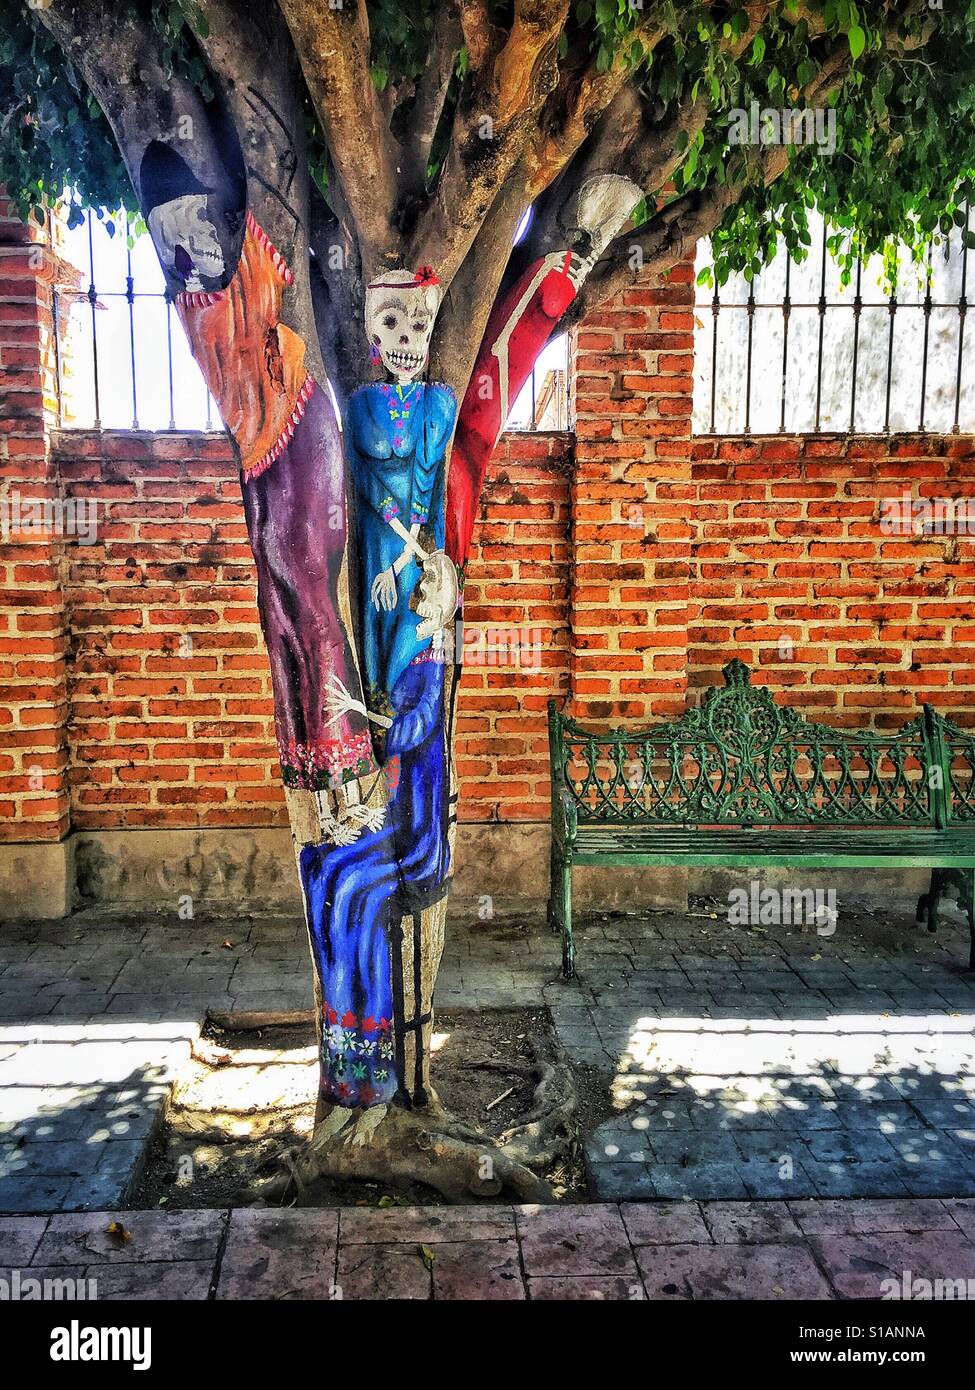 Pintado del tronco de un árbol en una calle pública en Ajijic, México. Foto de stock